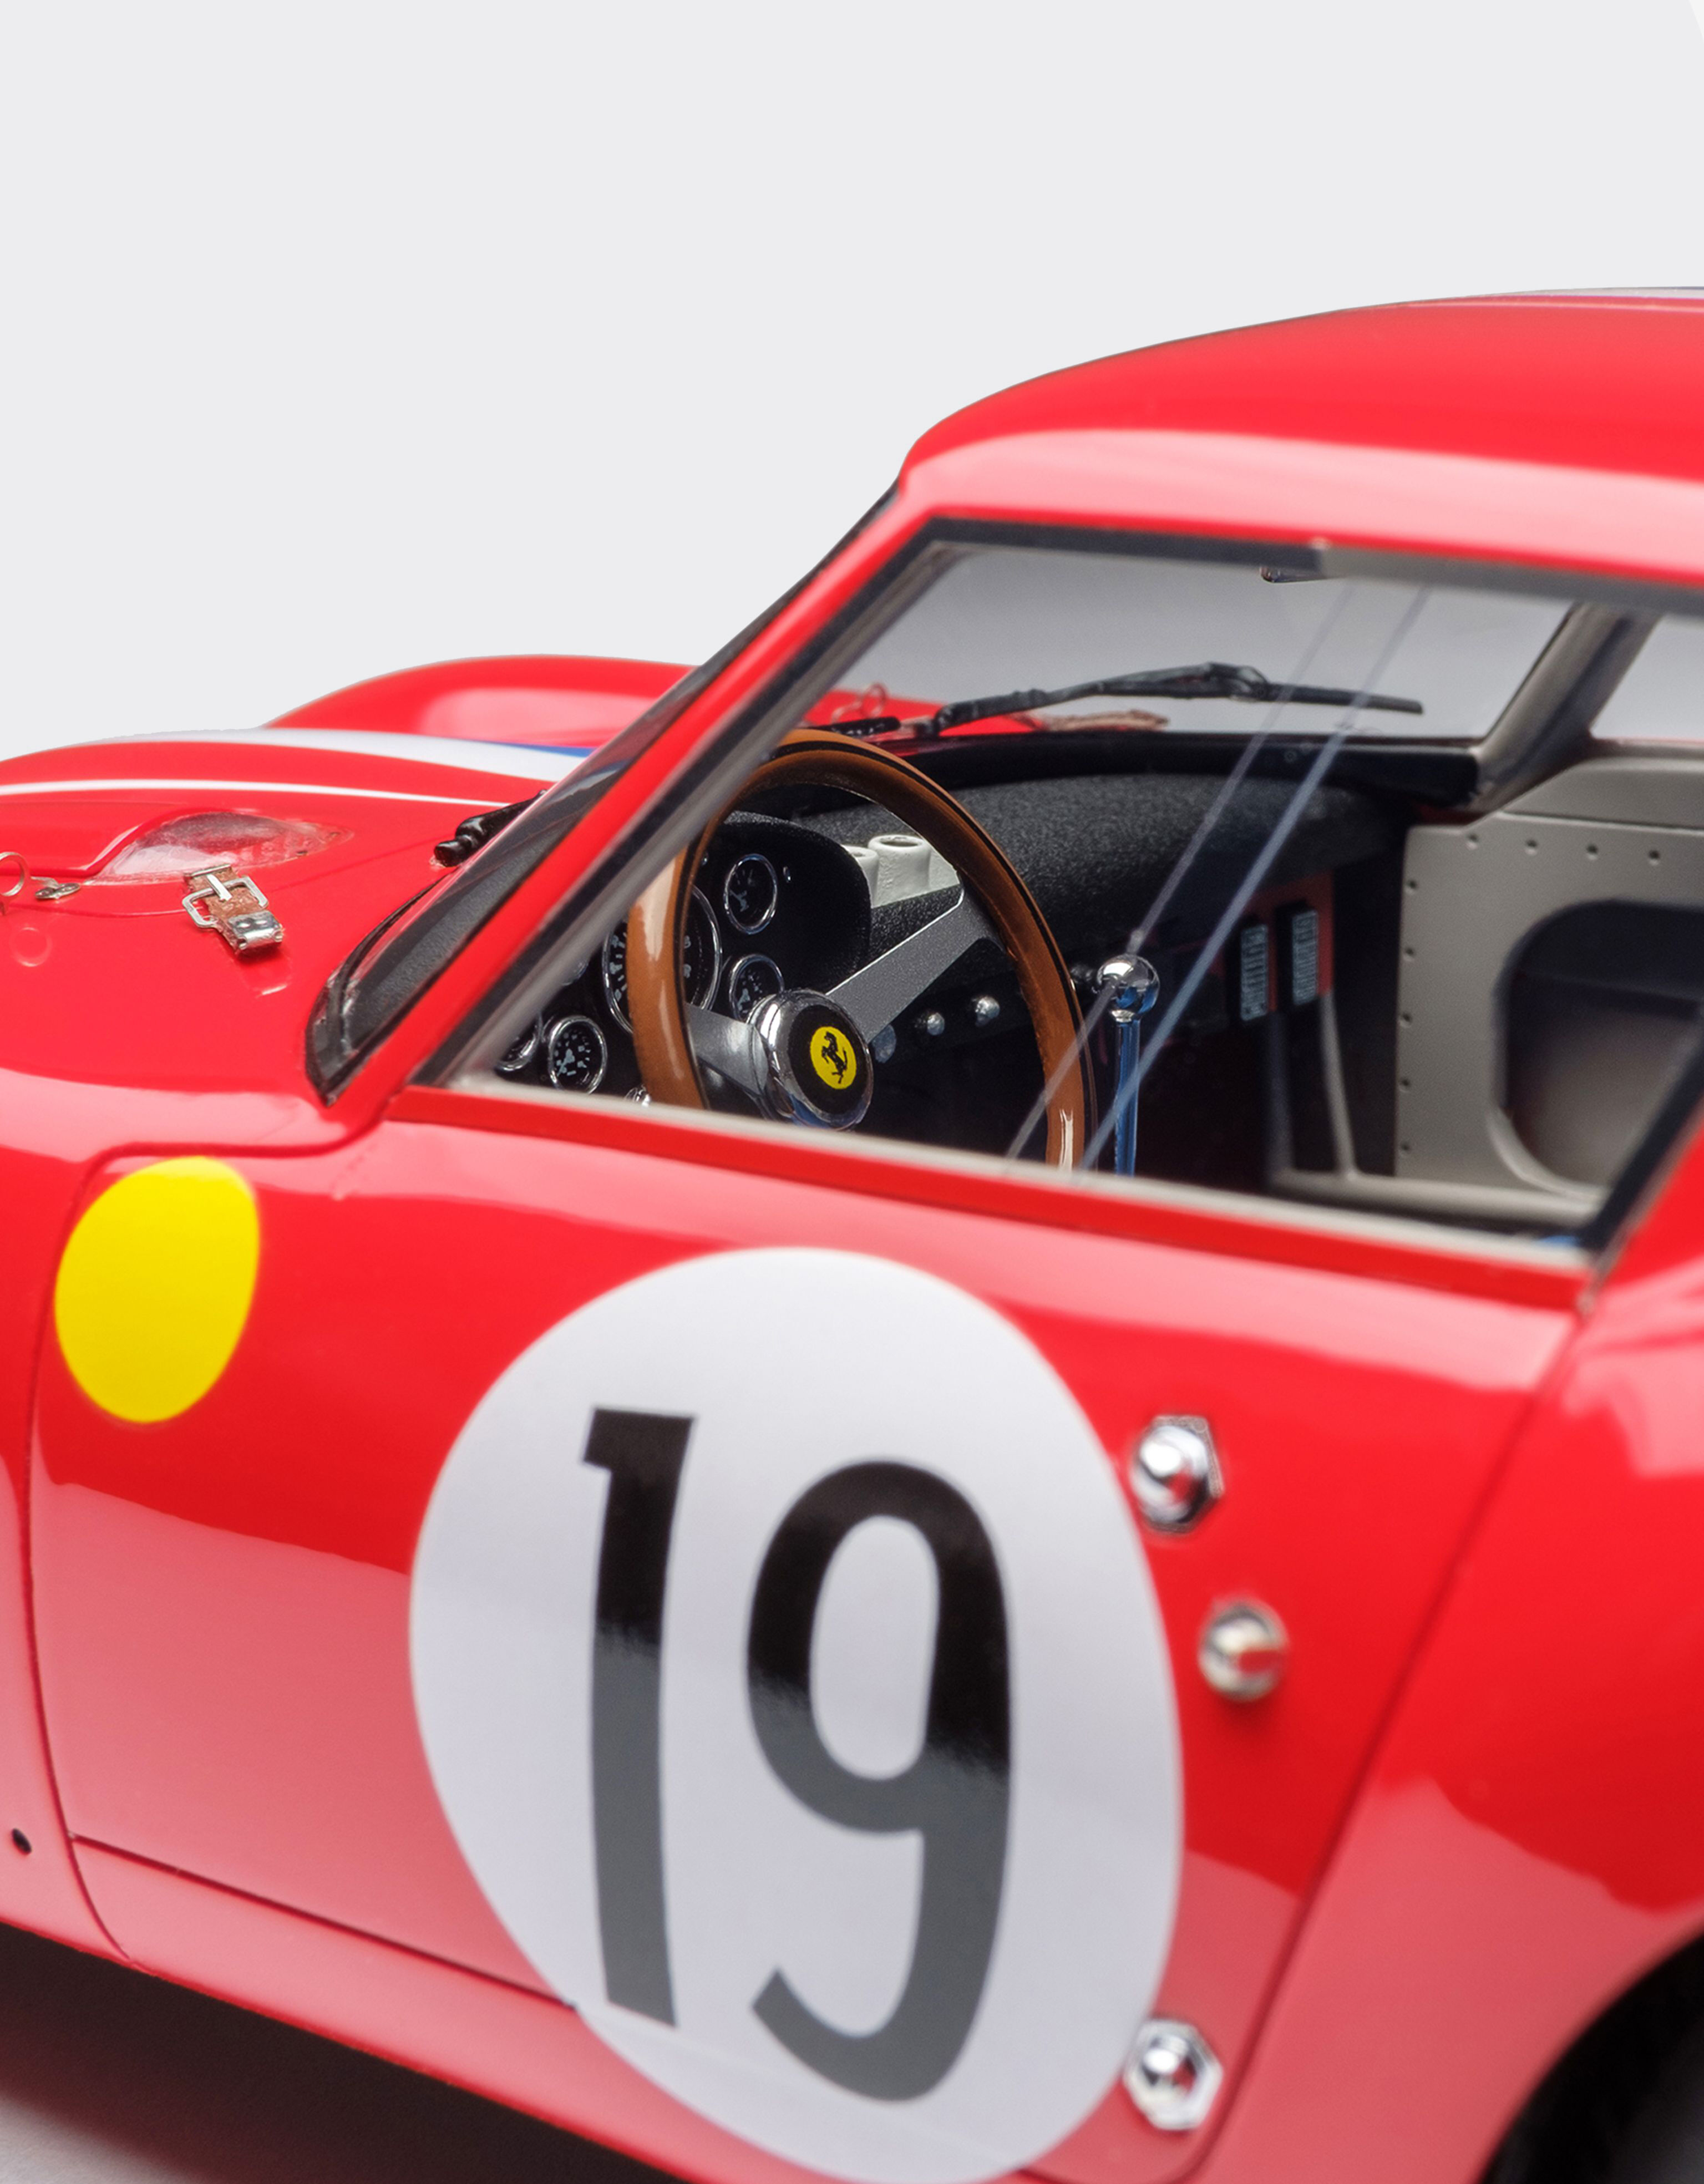 Ferrari 250 GTO 1962 Le Mans model in 1:18 scale